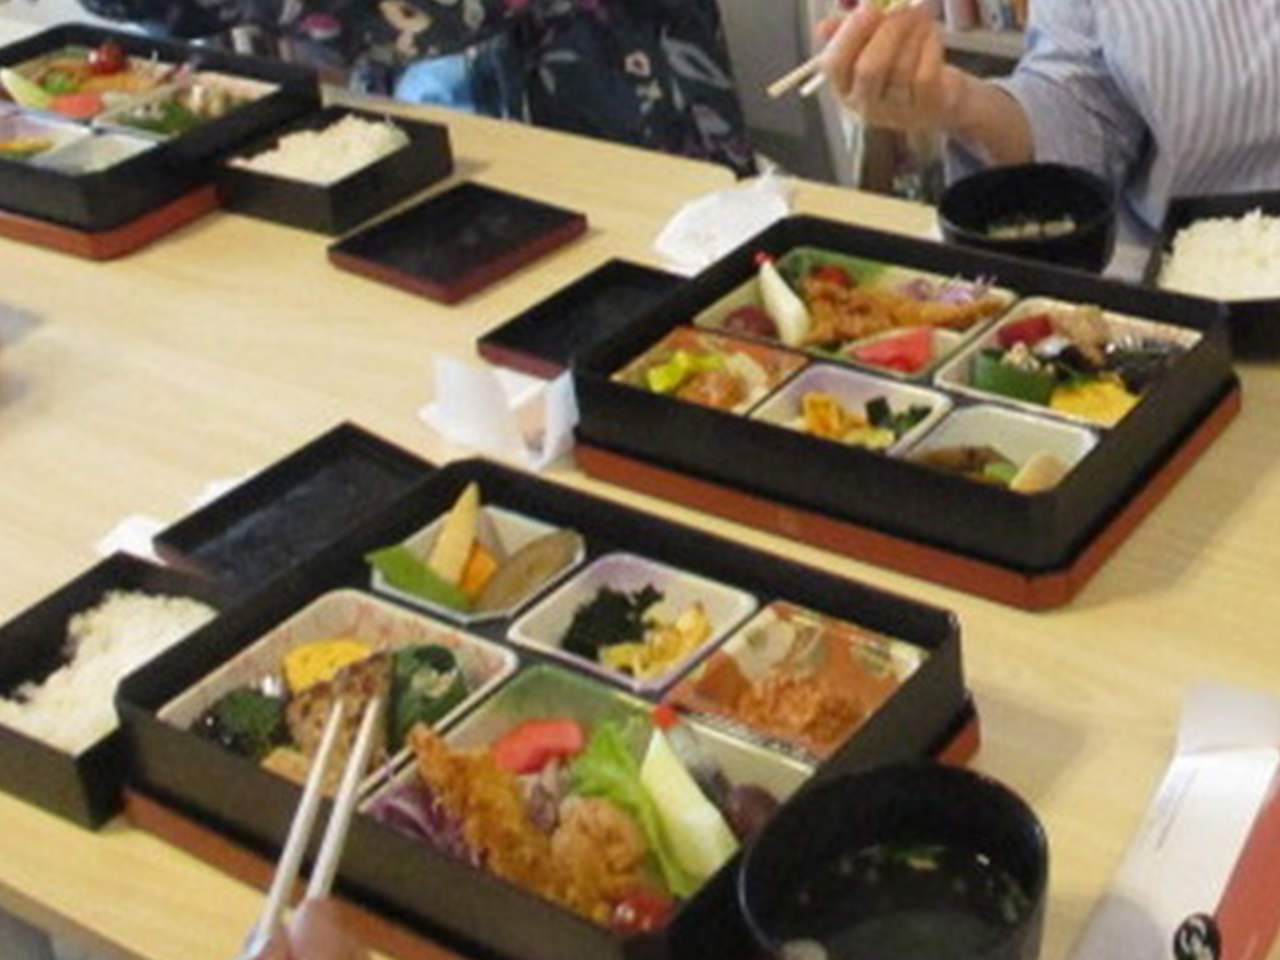 5月5日端午の節句の日に、サロンゆいま～るでランチ会を開催。名古屋で有名な仕出し屋さんでお弁当を注文し、皆さんと一緒にランチを楽しみました。エビフライや焼き魚、煮物や他にも沢山入っていてボリューム満点。とても楽しい時間でした。